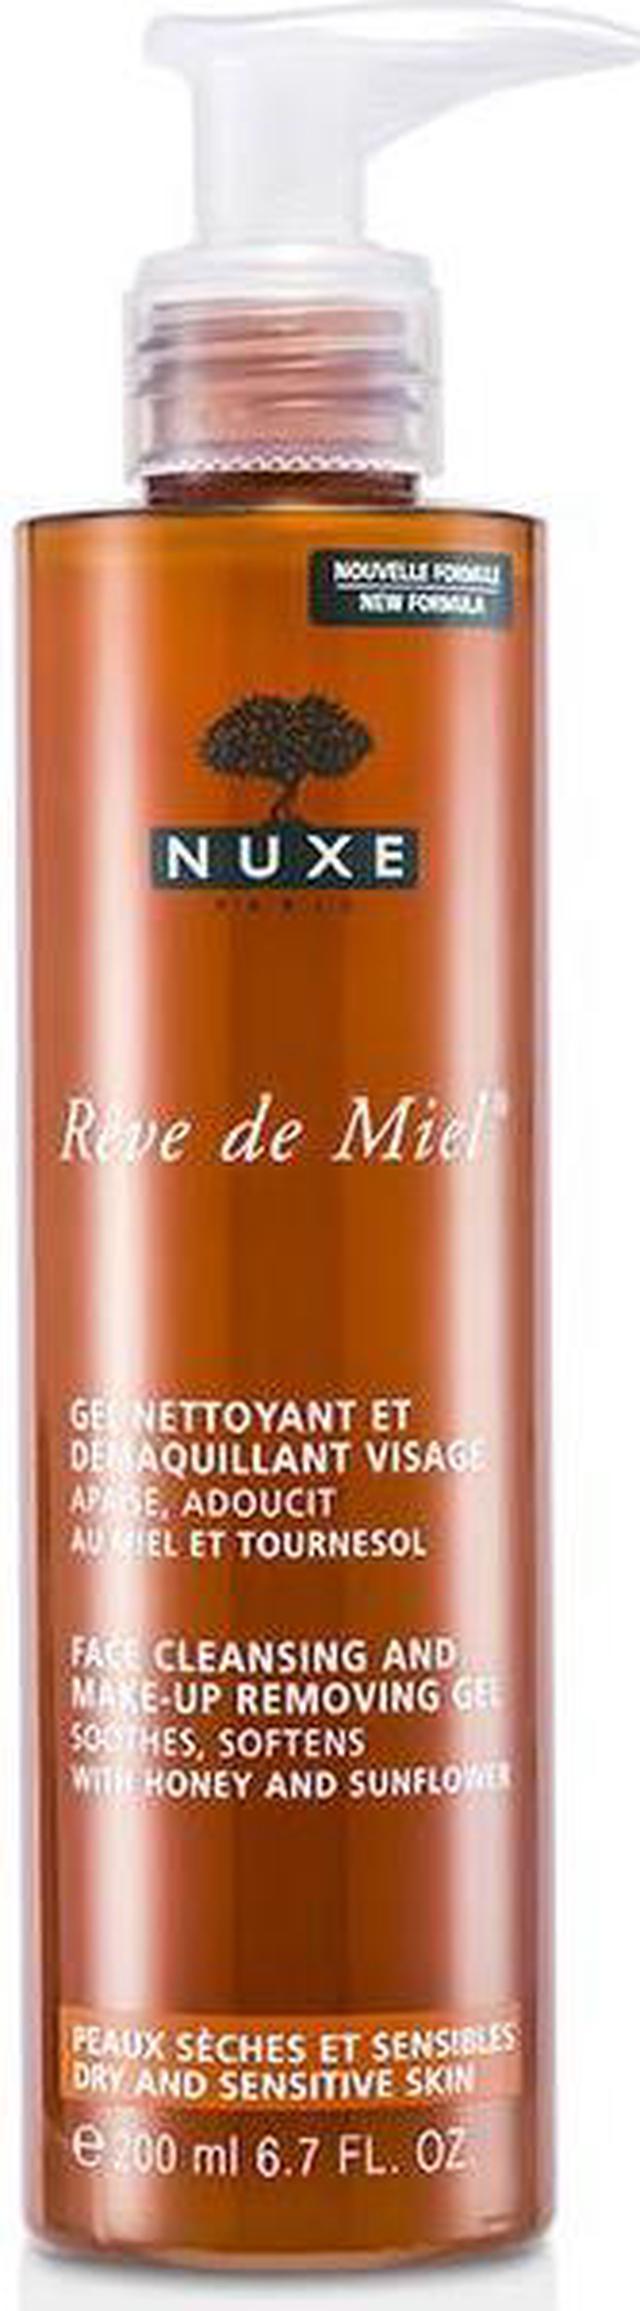 Nuxe Cleansing Removing Miel & - Face Makeup 200ml/6.7oz De Reve